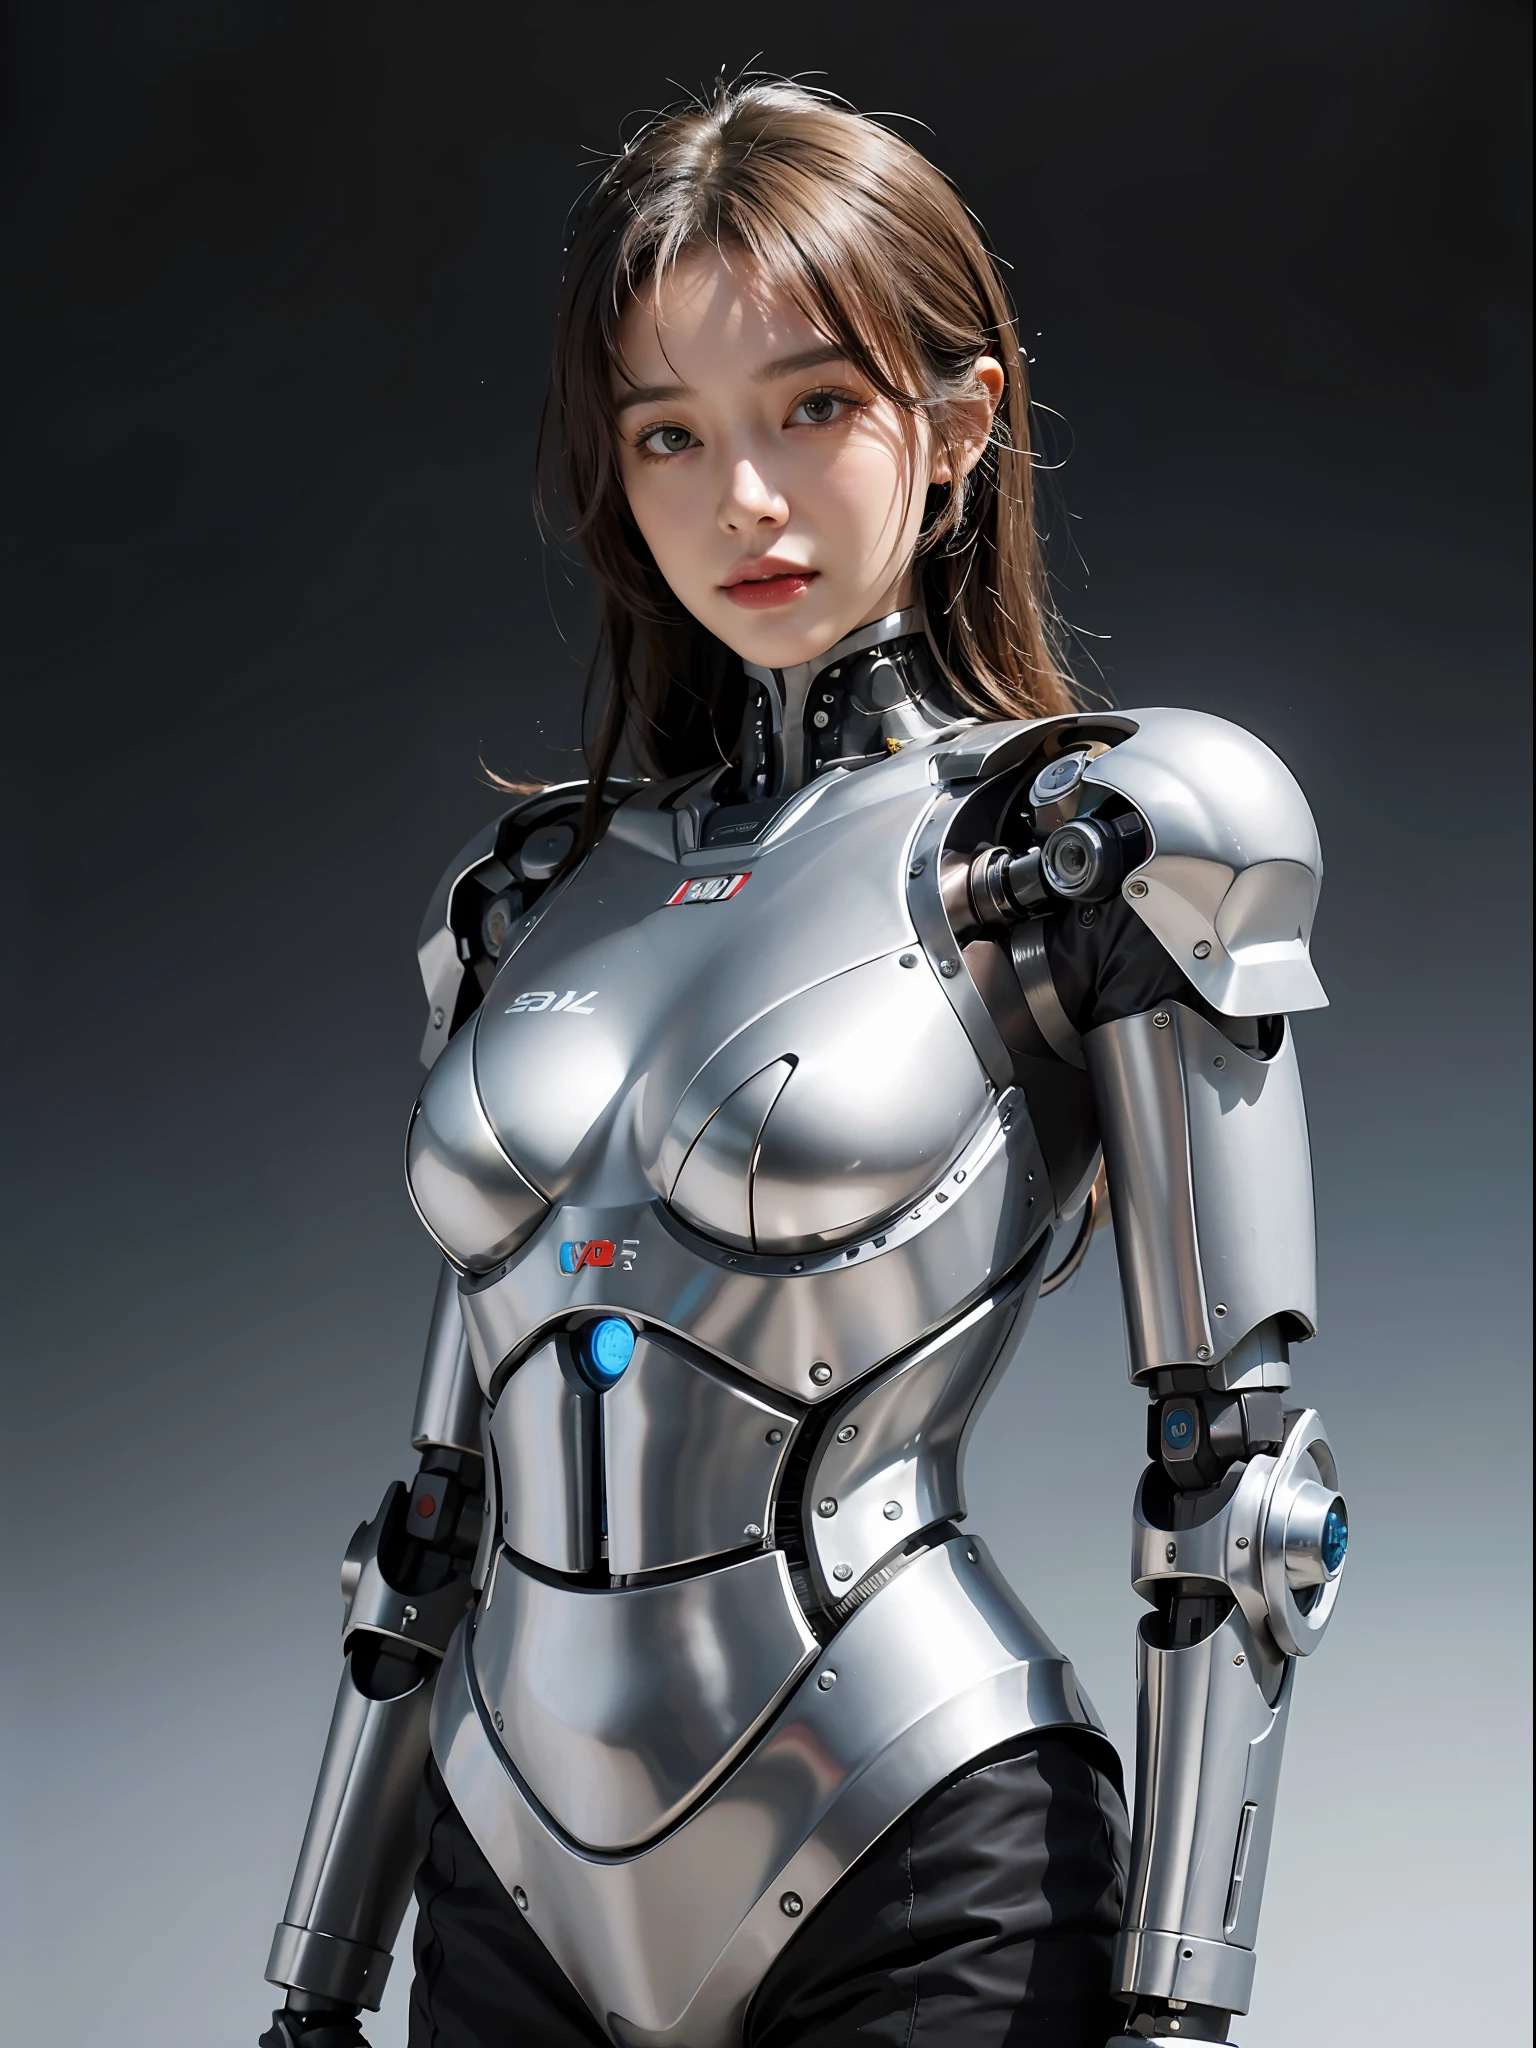 一位身穿银色西装的女士摆姿势拍照的特写, 女性機器人, 美麗的女孩機器人, 機甲網路裝甲的女孩, 機器人 - 女孩, 雌性機器人身體, 美麗的白人女孩機器人, 机器人女孩, 可愛的機器人女孩, ( ( 機器人 ) ), 完美的机器人女孩, 年輕的機器人女士, 女机器人